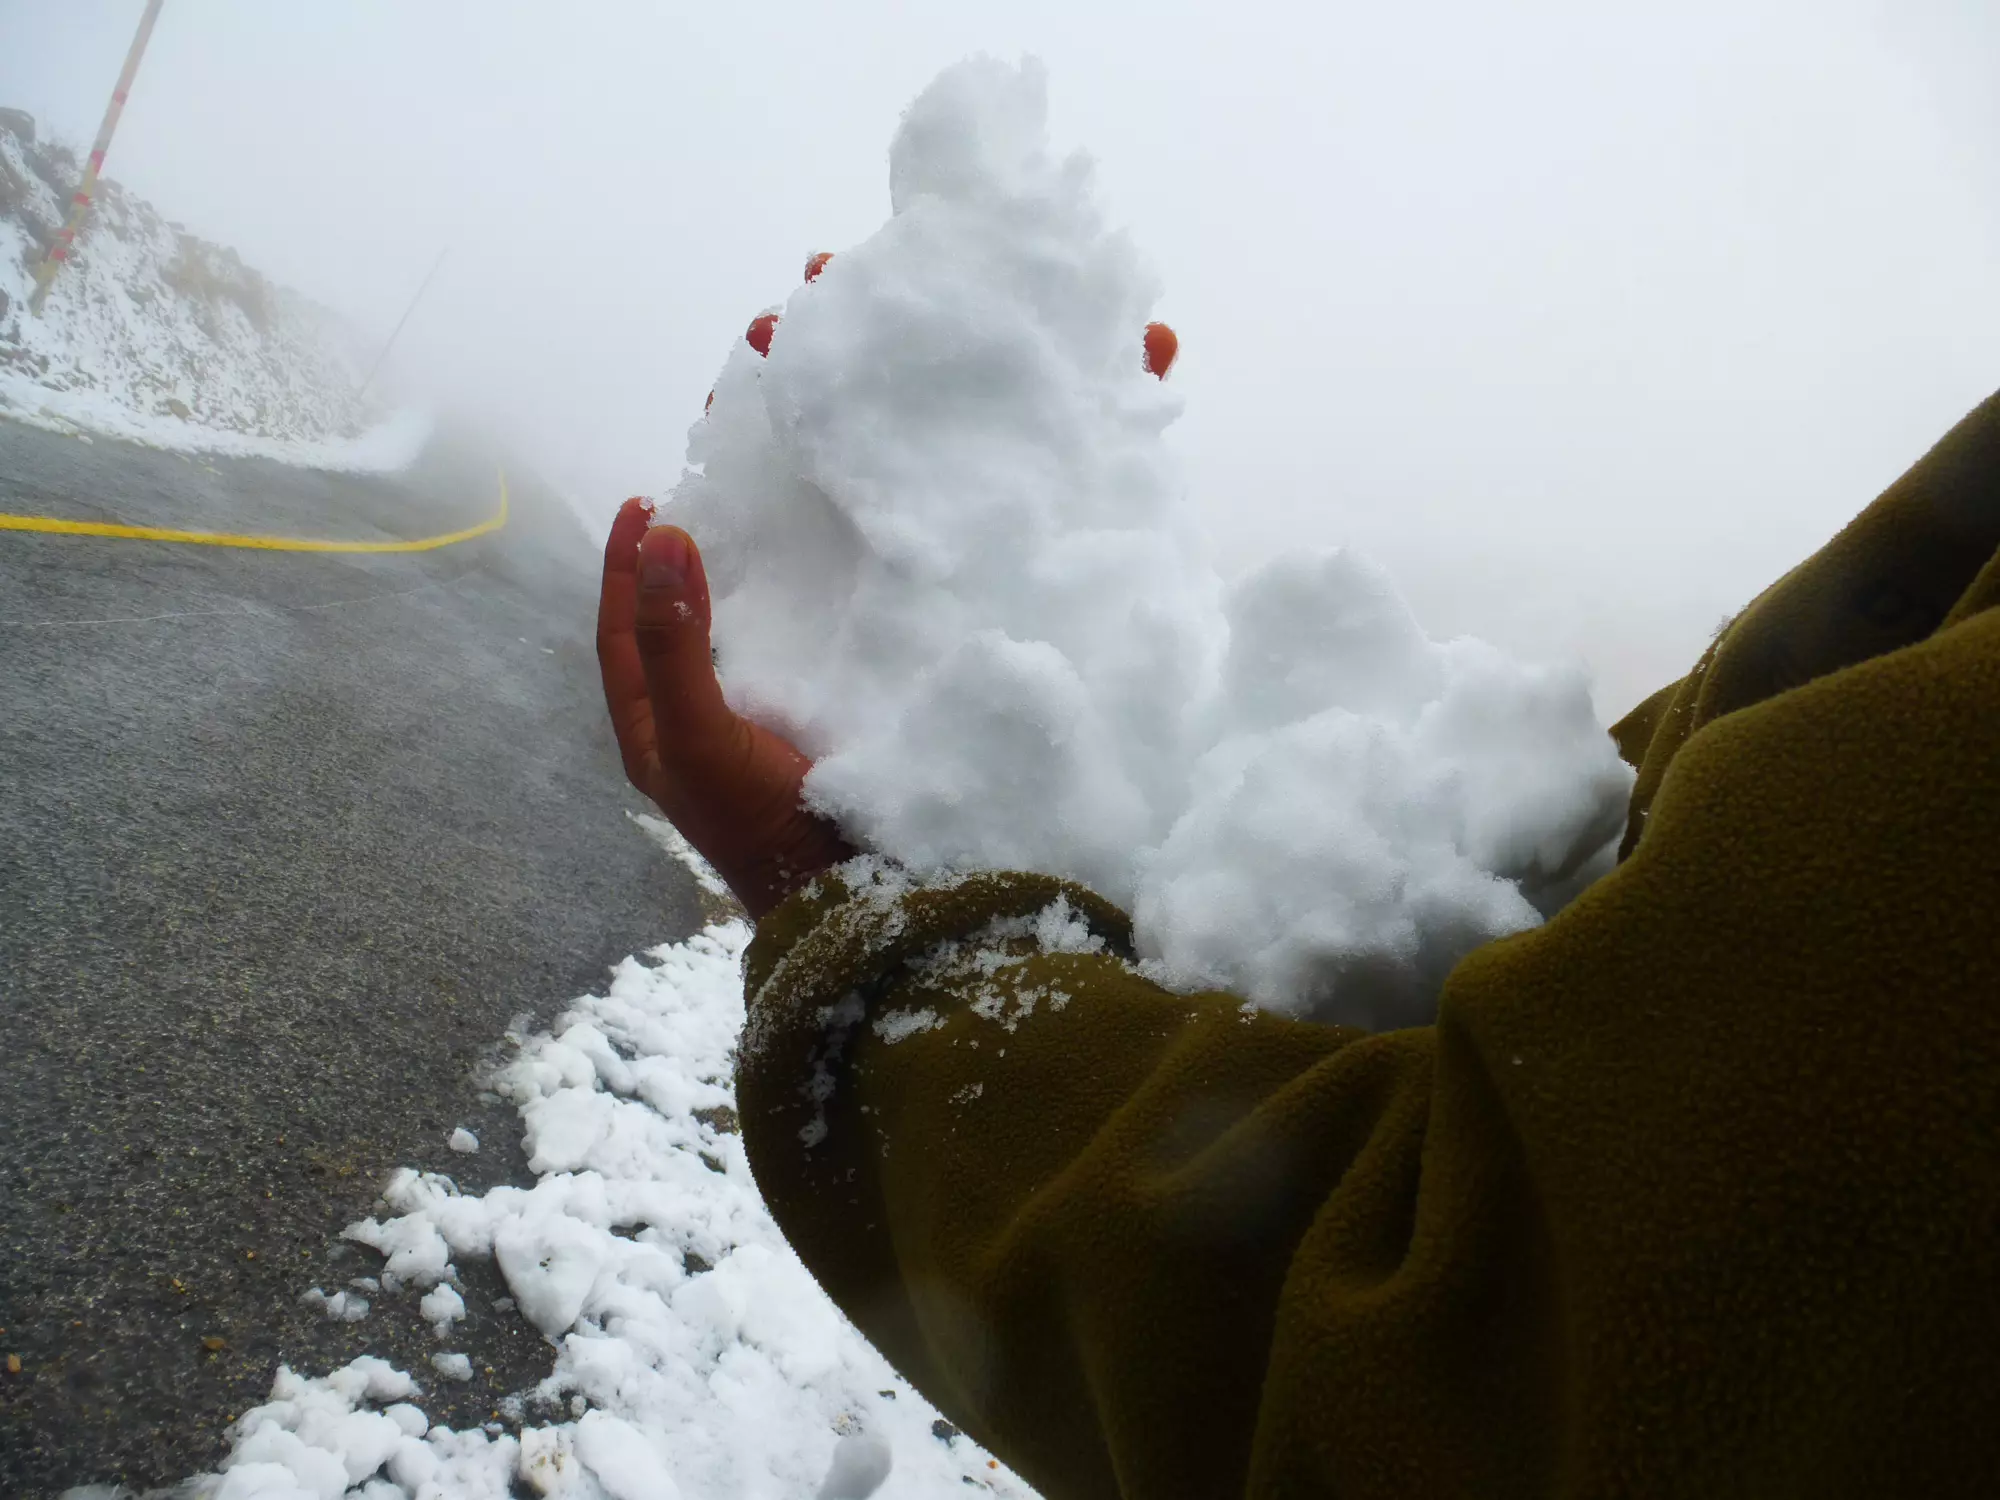 חייל אוחז בשלג בחרמון, שבוע שעבר